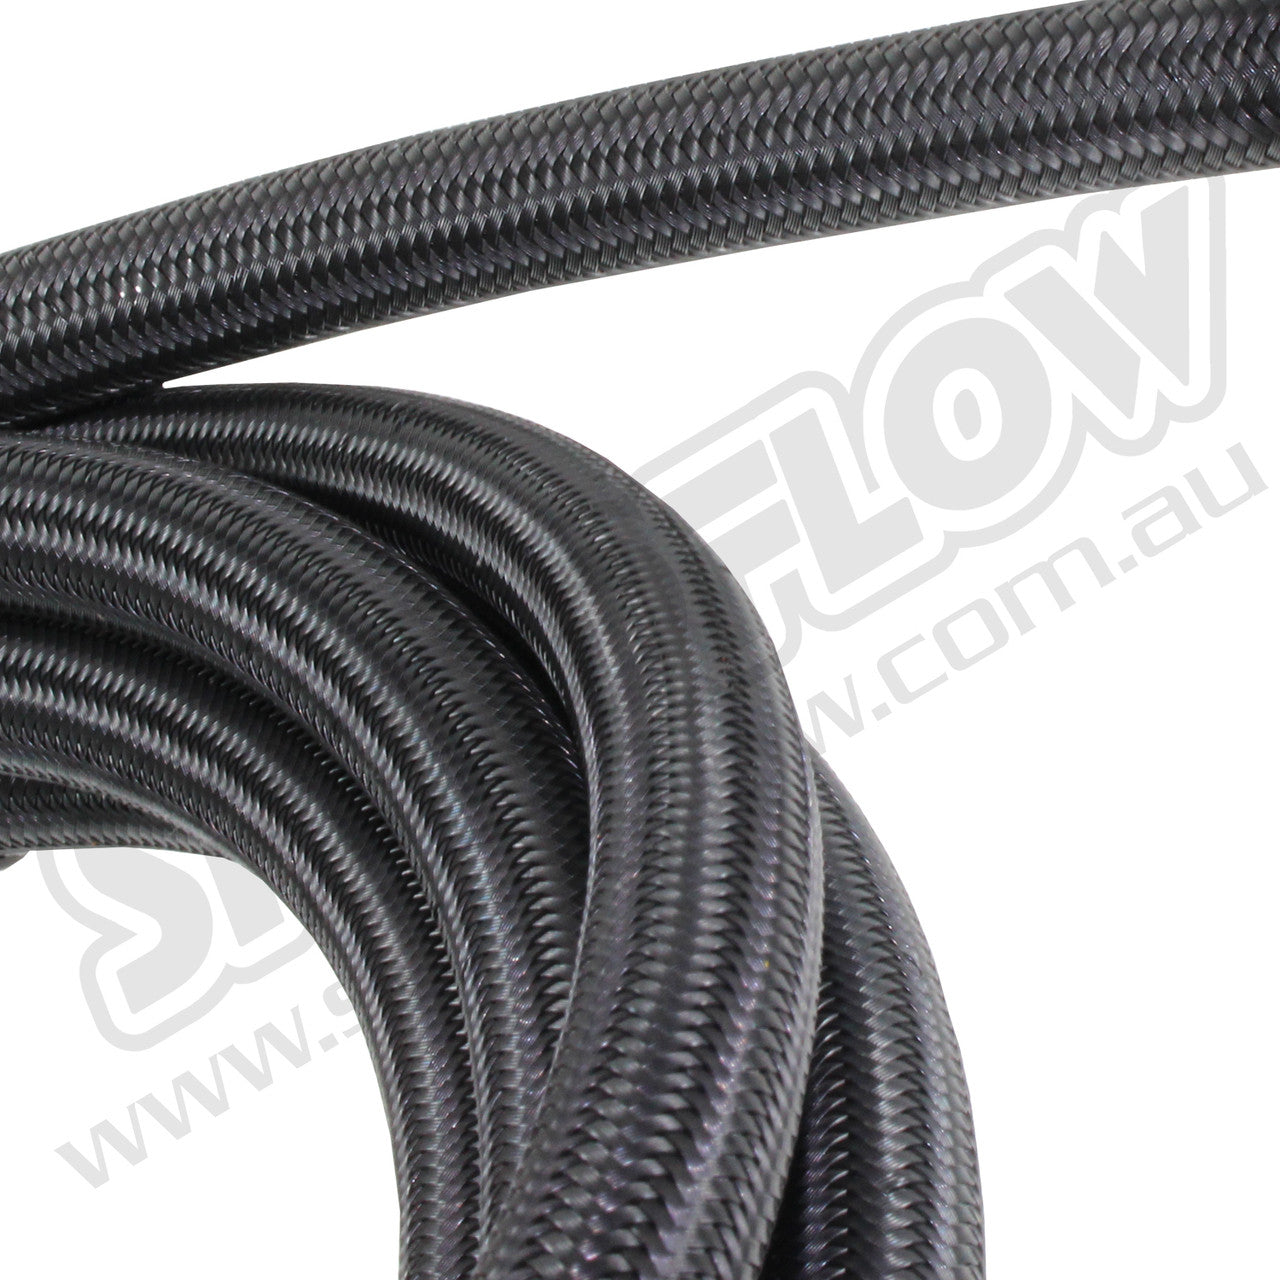 Speedflow 5M -04AN 200 Series Braided Hose - Black Stainless Steel